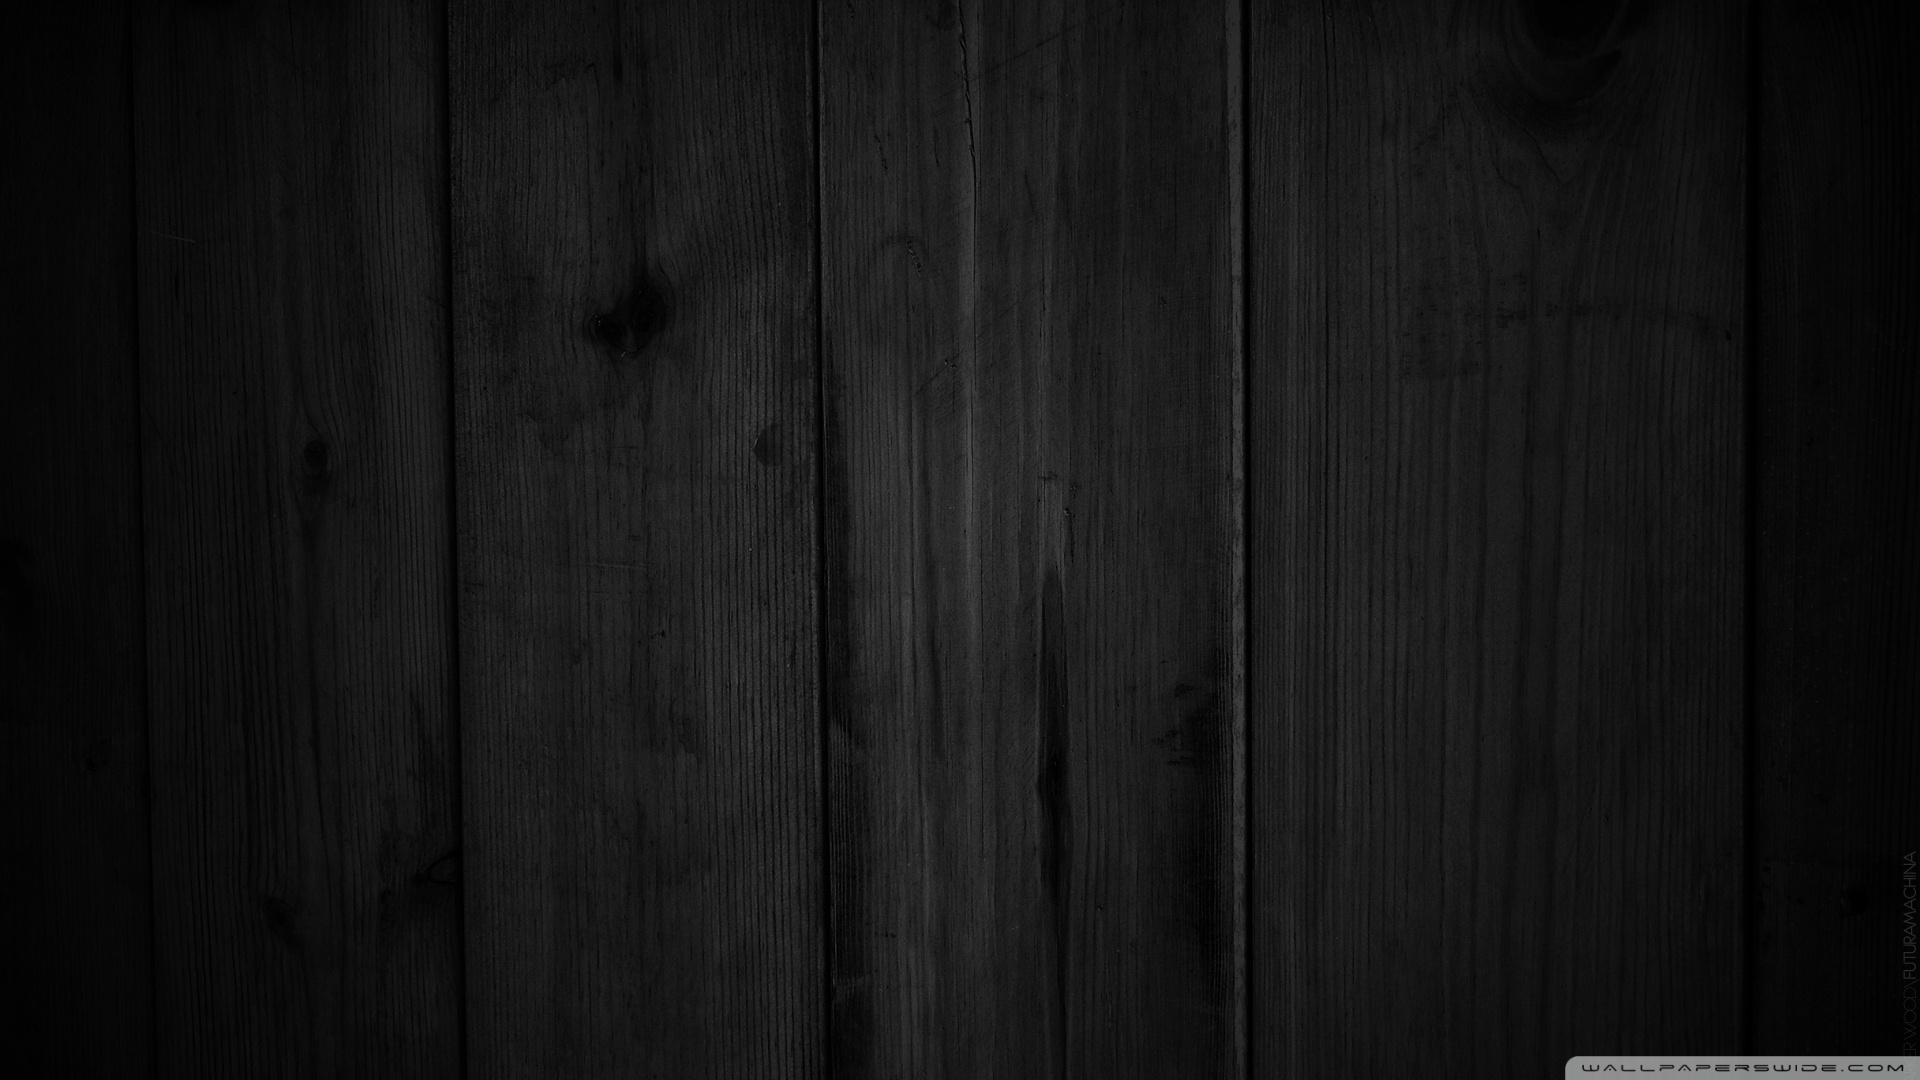 Hình nền gỗ đen: Chào mừng bạn đến với không gian đầy sang trọng và quý phái với hình nền gỗ đen. Với đường vân gỗ đậm chất nam tính, hình nền này sẽ mang đến cho bạn một cảm giác ấm áp và hoàn hảo cho không gian của bạn. Hãy cùng khám phá hình ảnh liên quan để tận hưởng mọi sự đẹp đẽ của nó nhé.